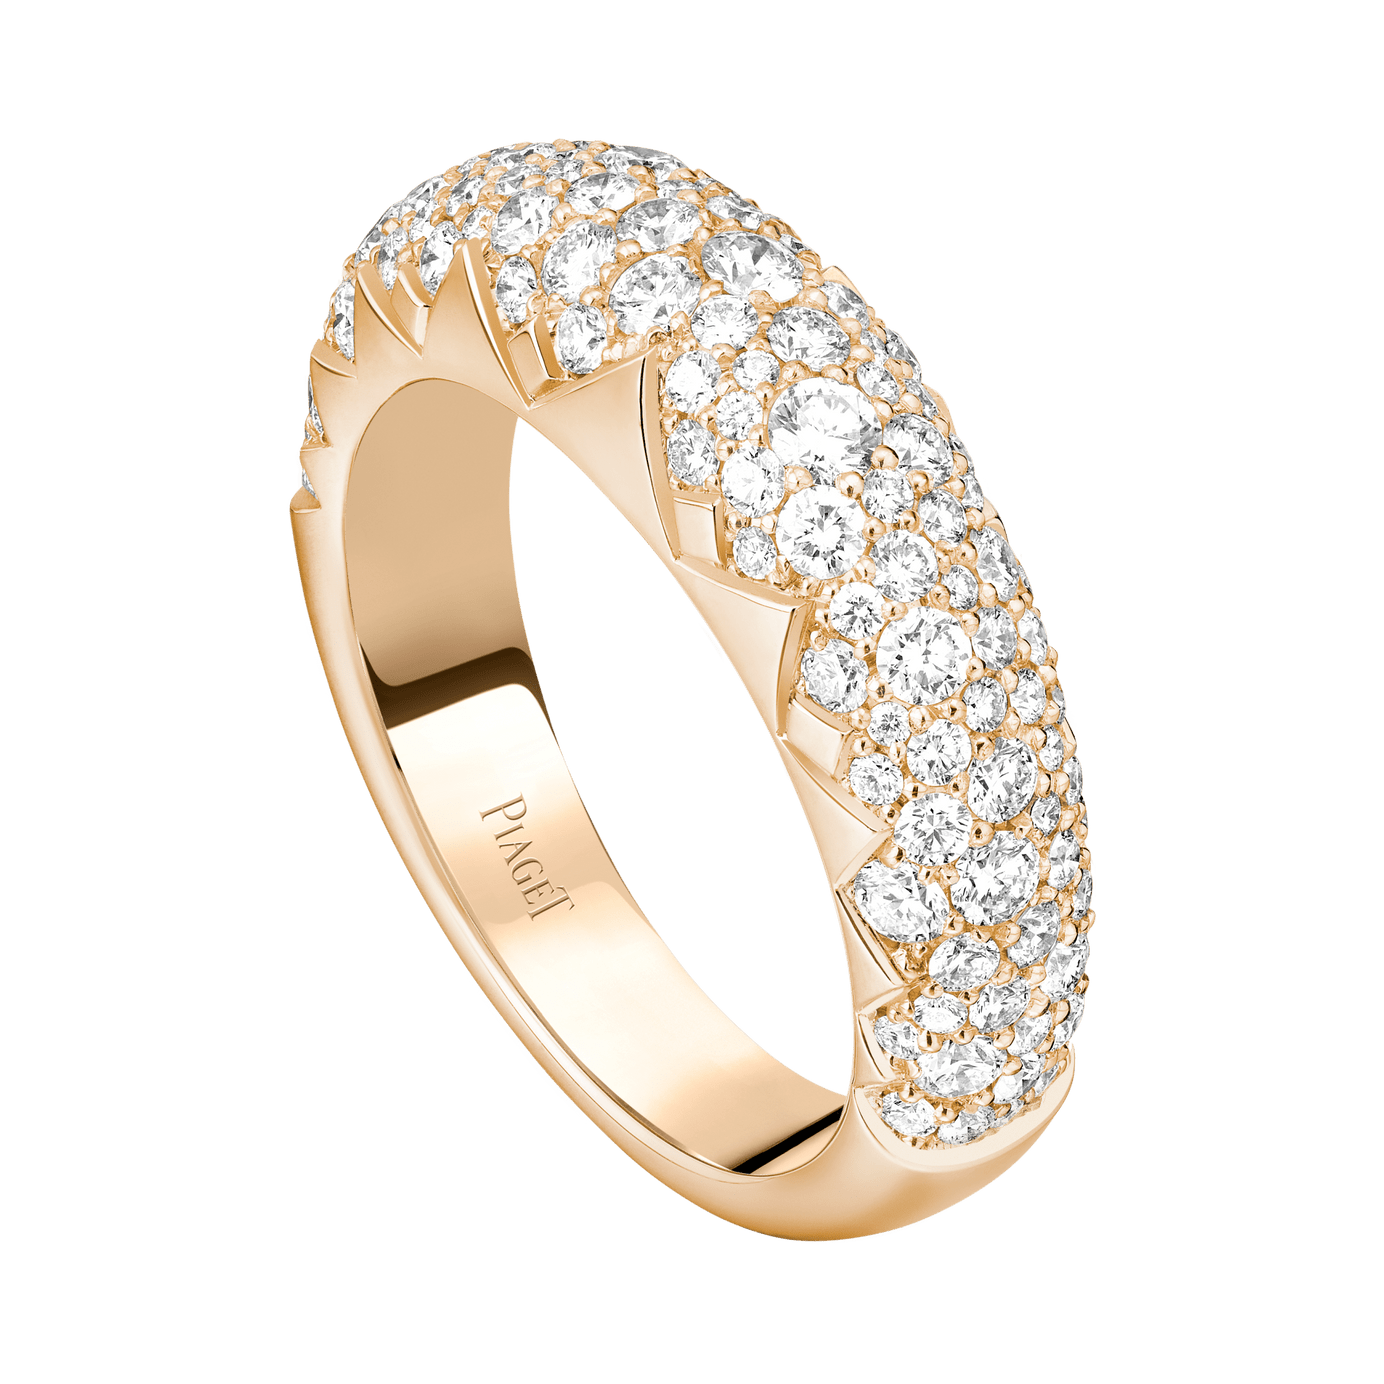 Piaget Rose Gold Diamond Ring G34R1600